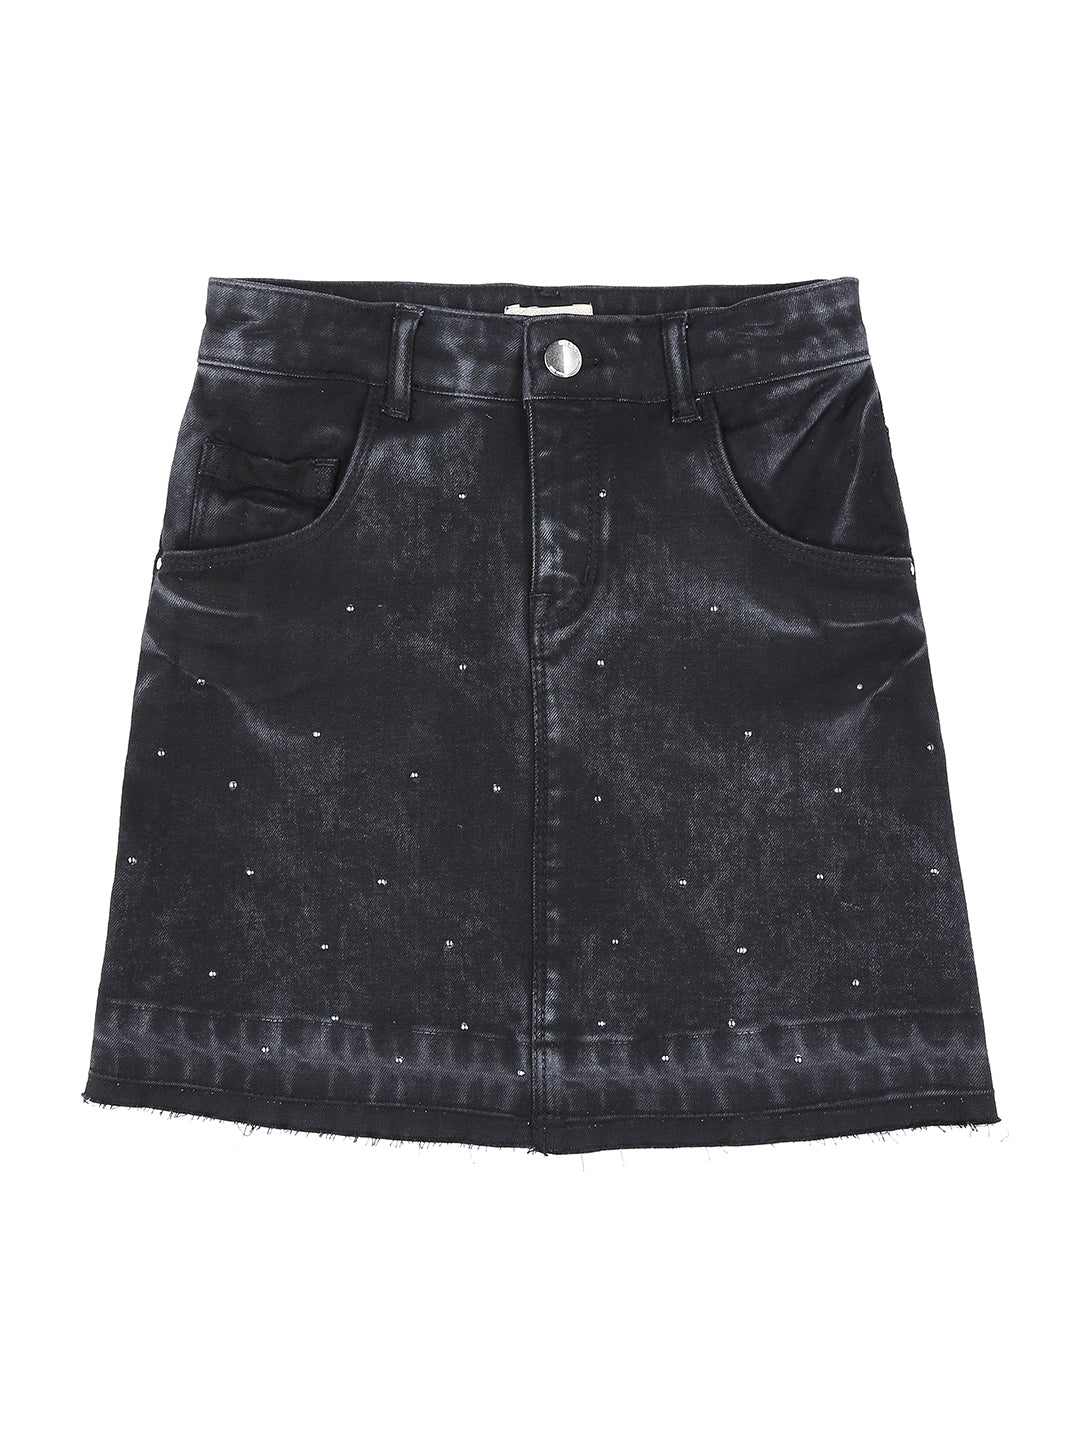 Girls Black Denim Applique Fixed Waist Skirt